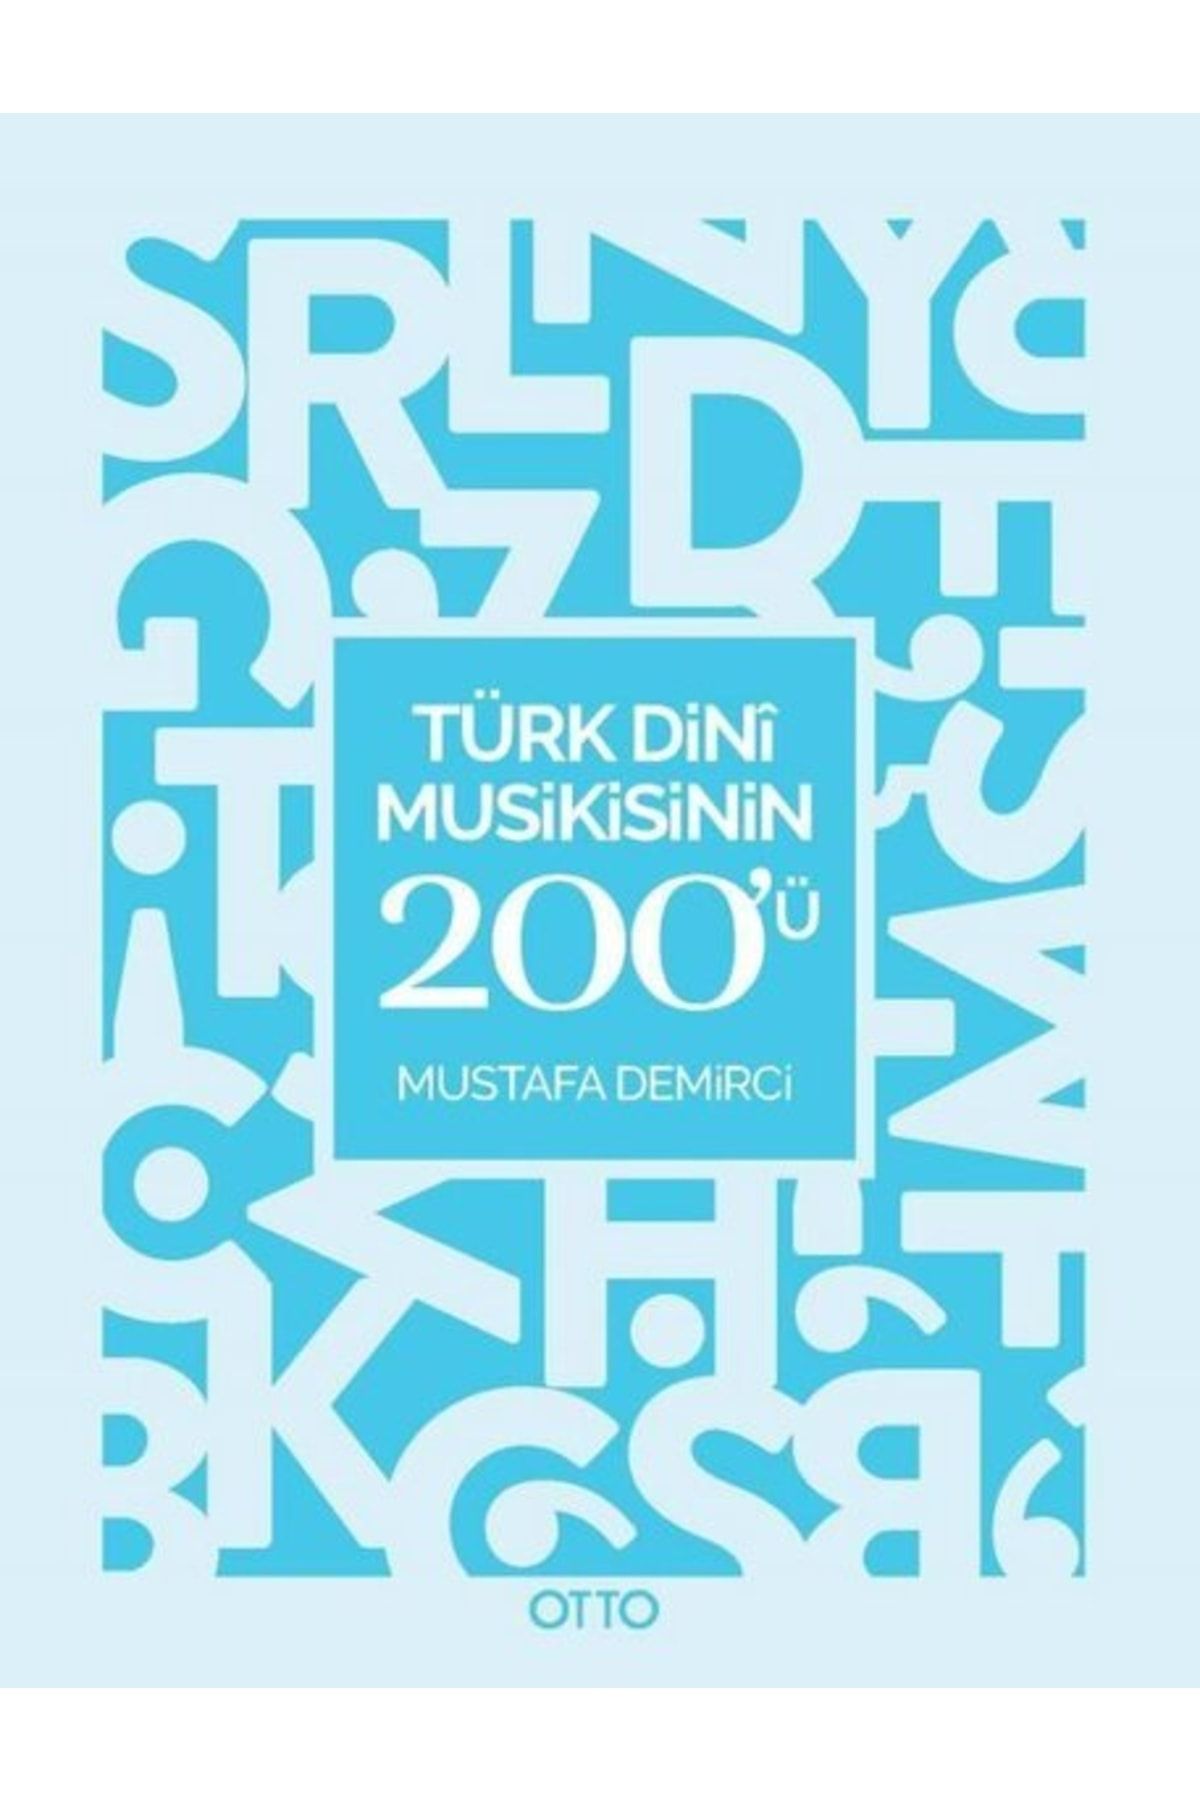 Otto Türk Dini Musikisinin 200ü